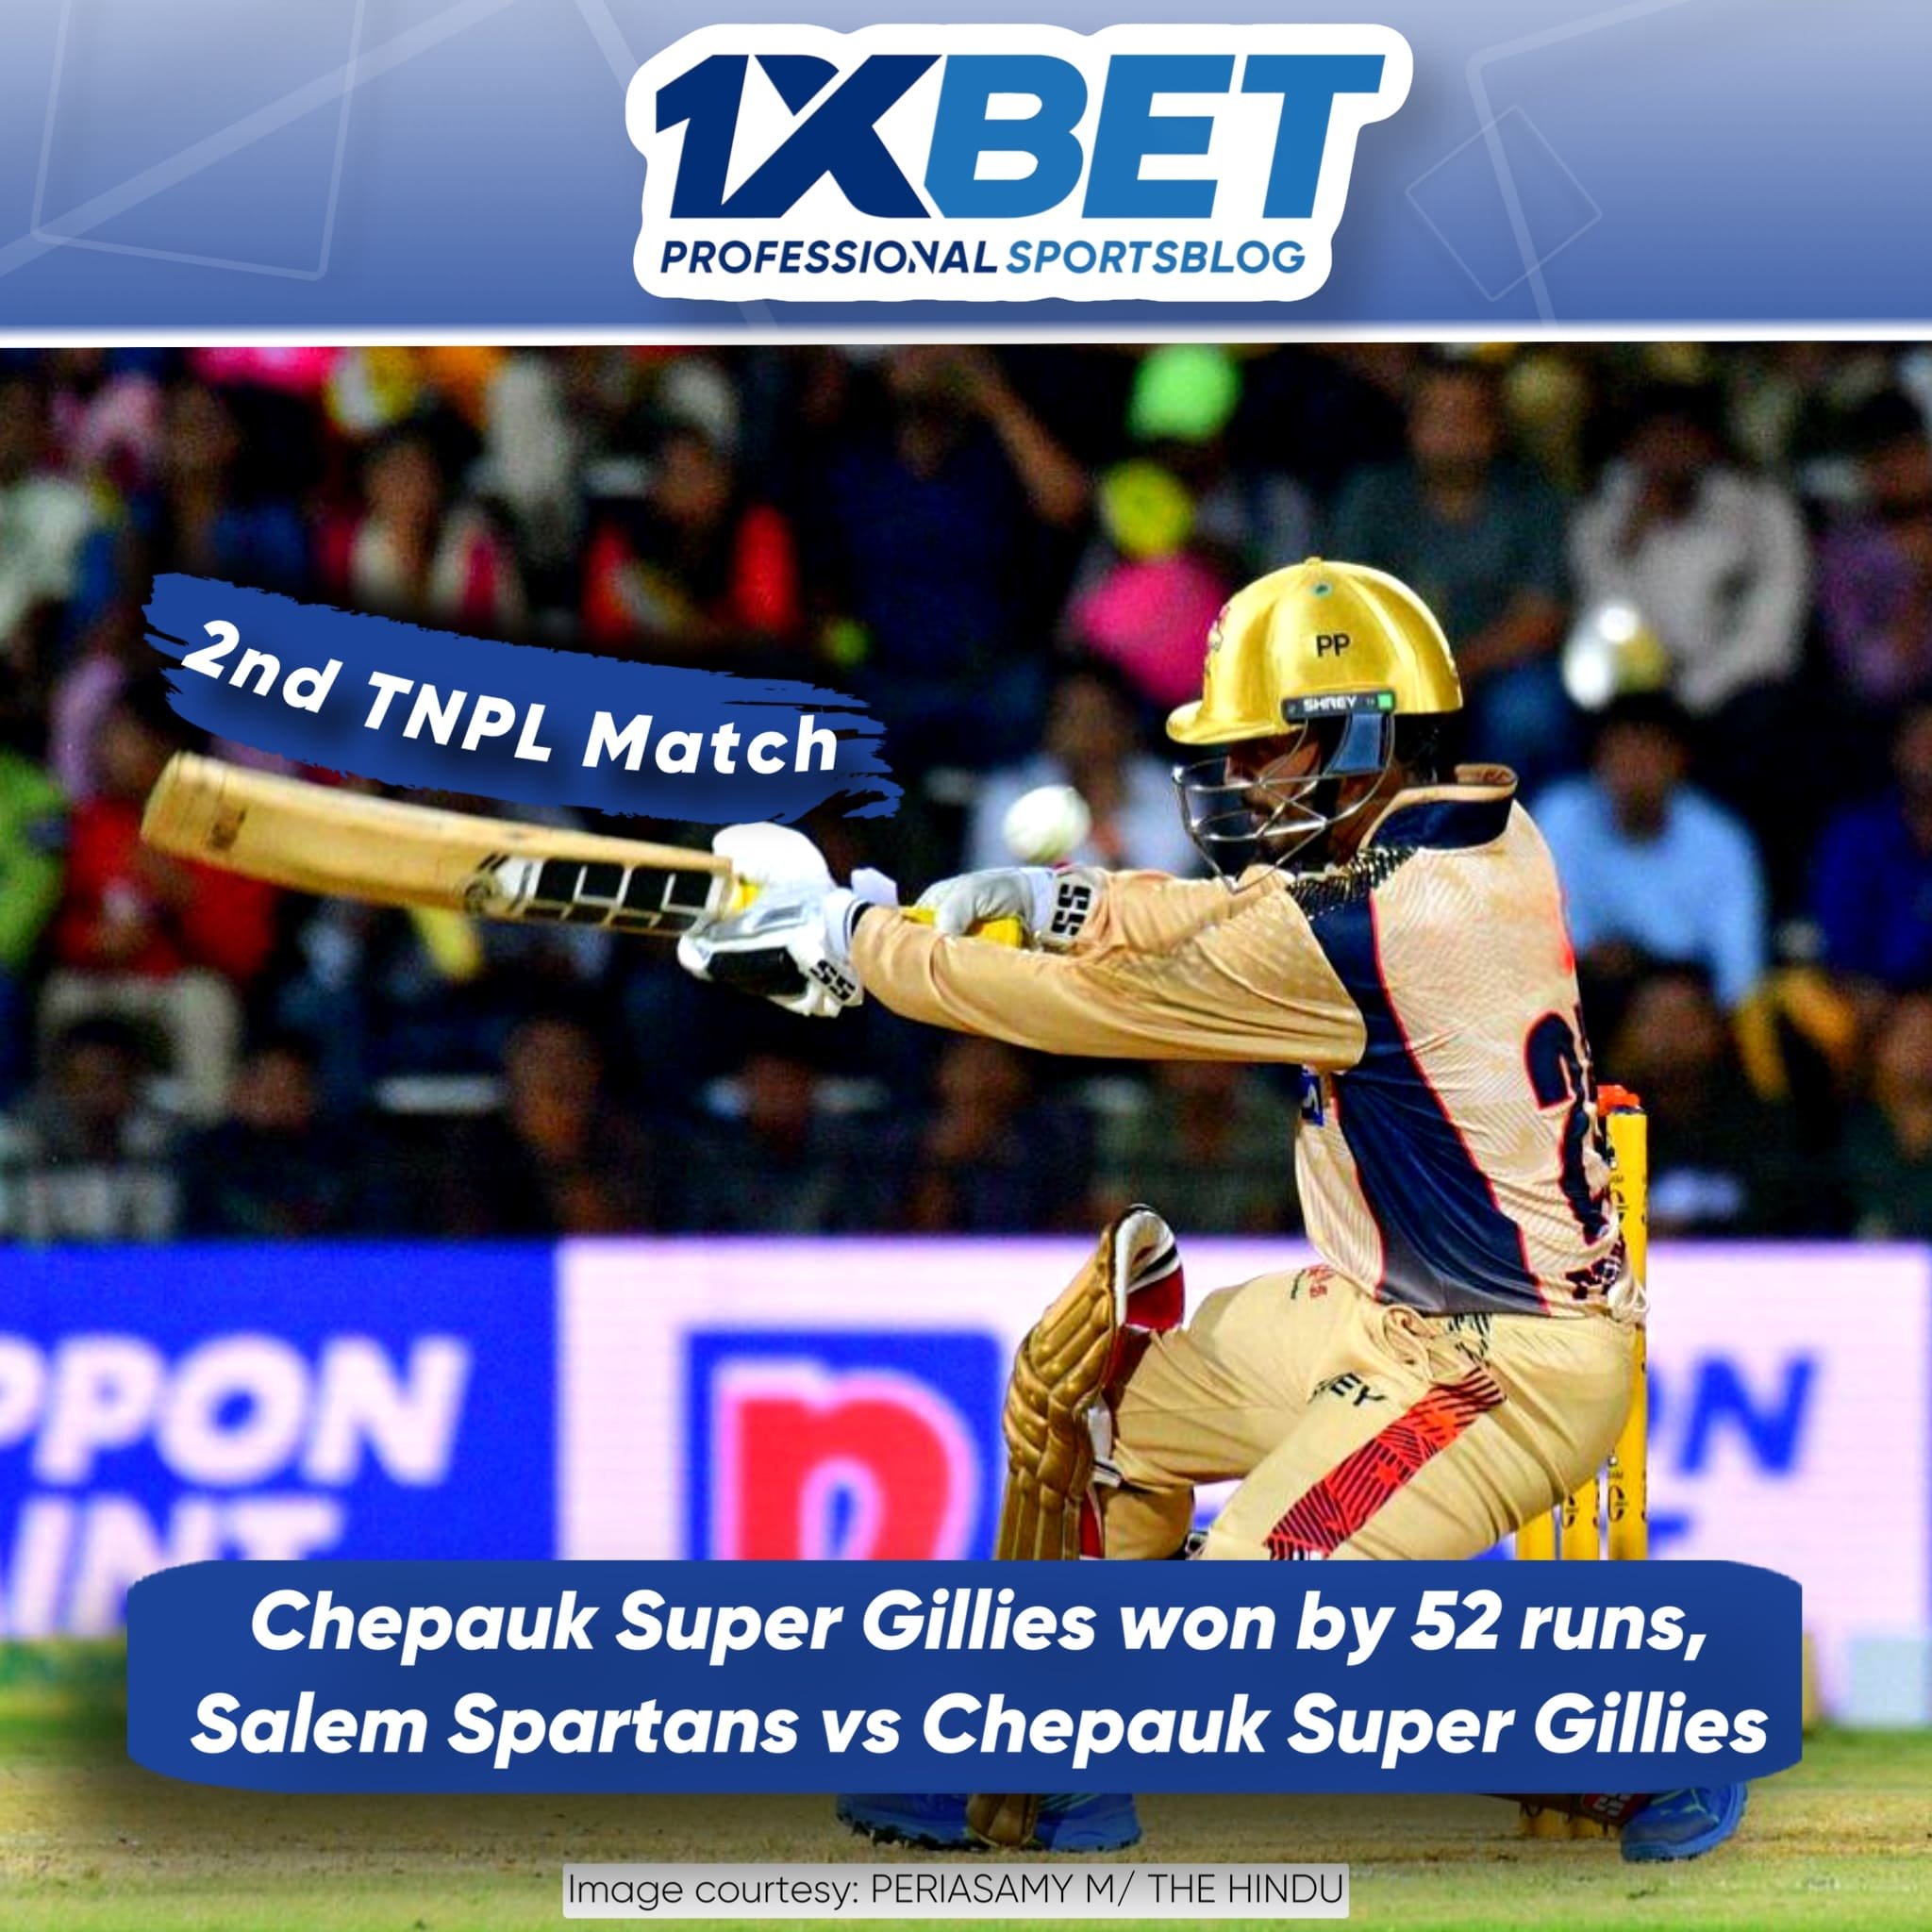 Chepauk Super Gillies won by 52 runs